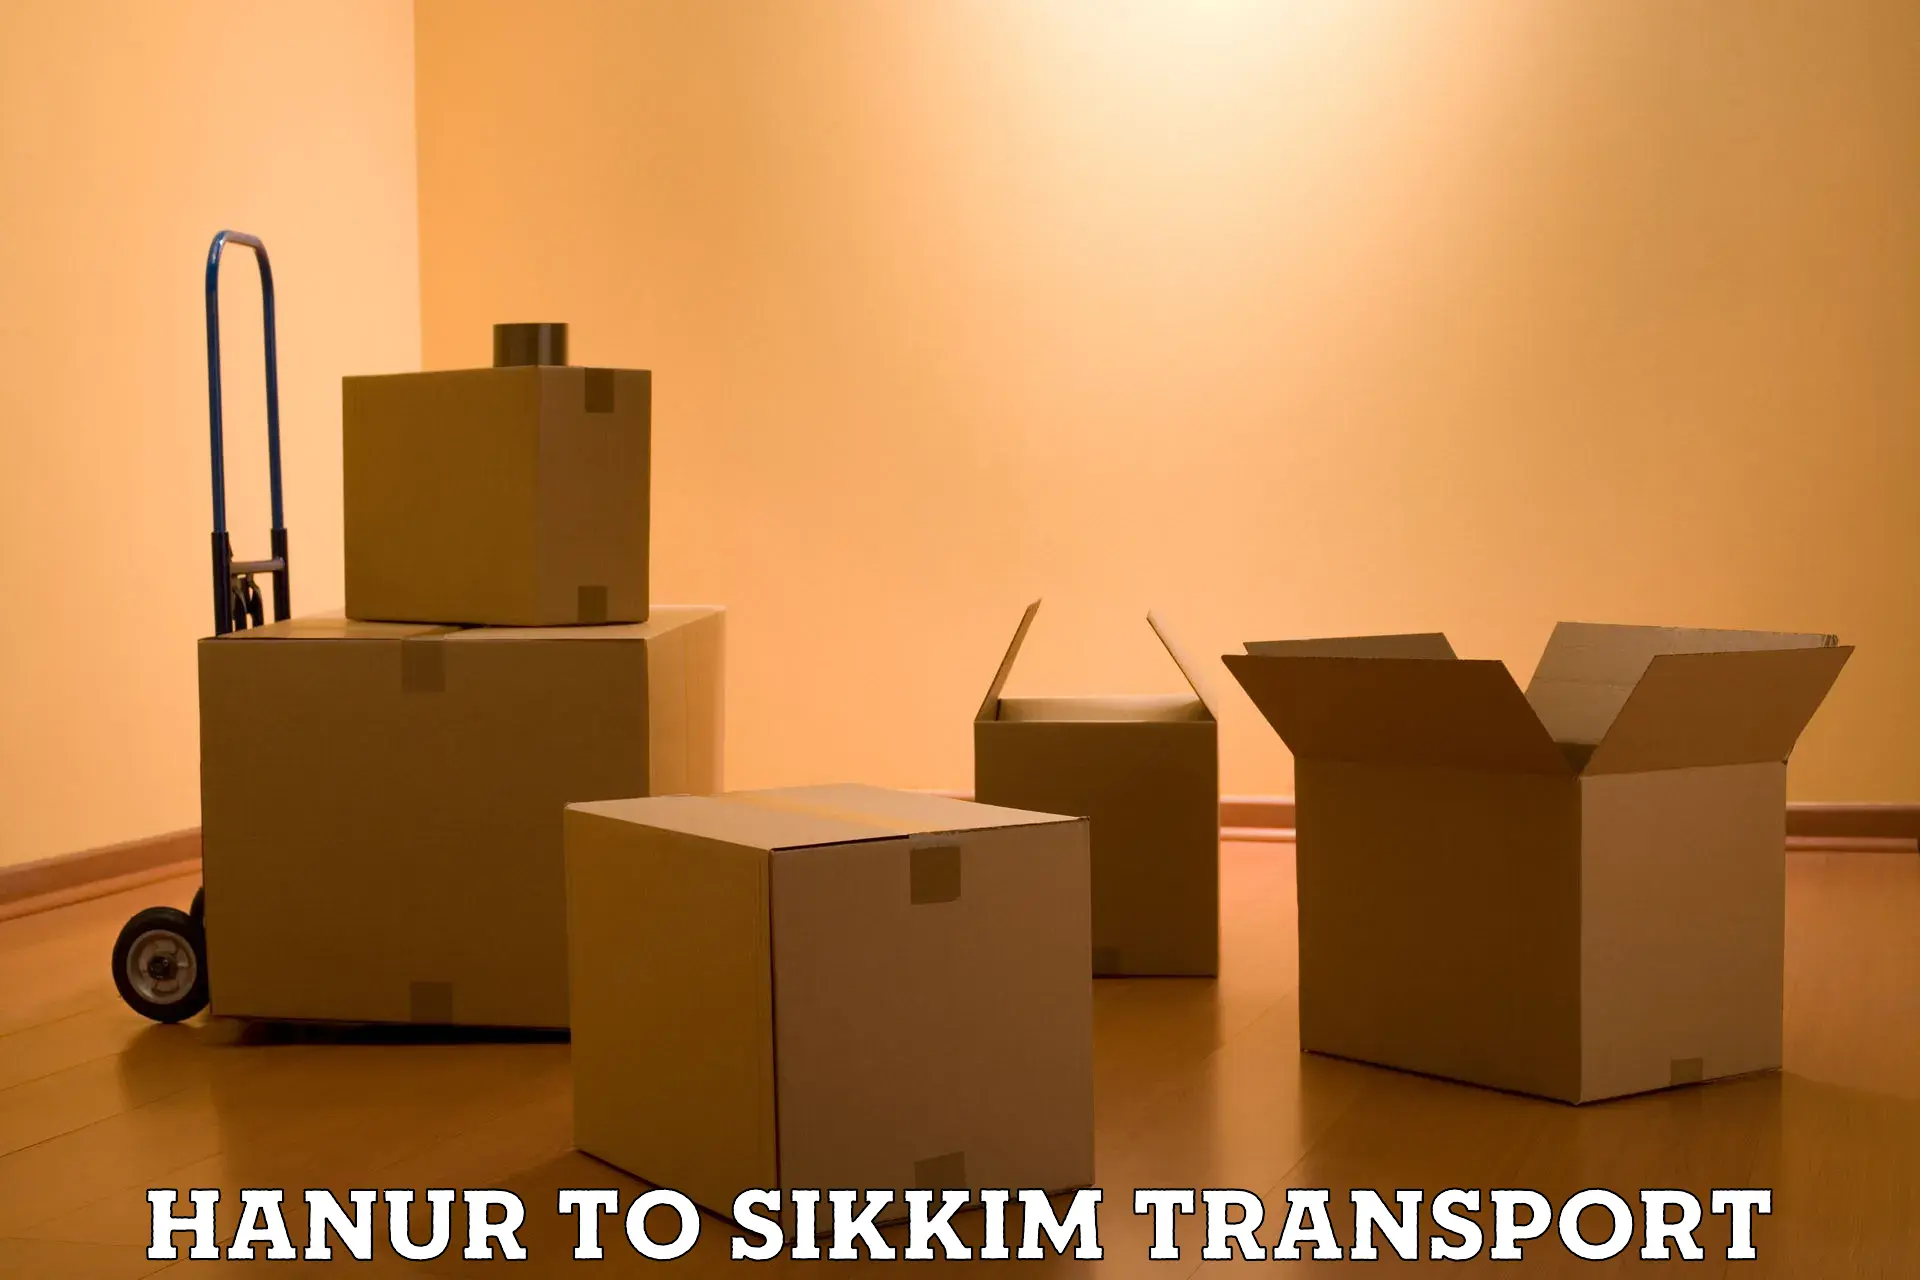 Online transport service Hanur to Sikkim